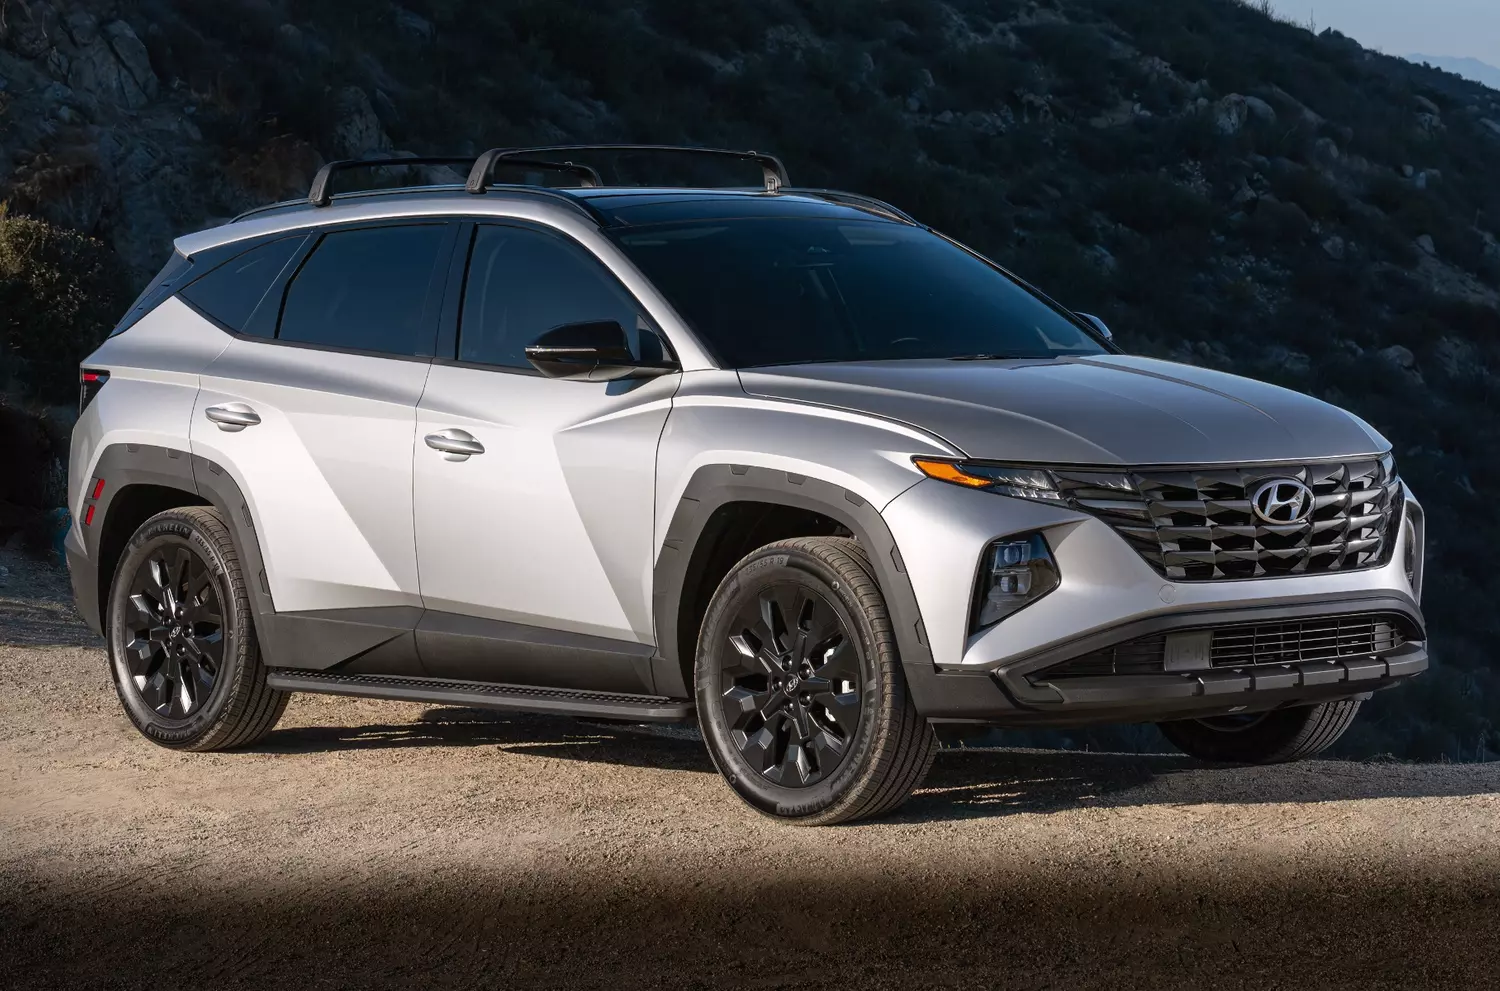 Продажа Hyundai Tucson 2022 года в Павлодаре - №130885032: цена 19000000₸.  Купить Hyundai Tucson — Колёса